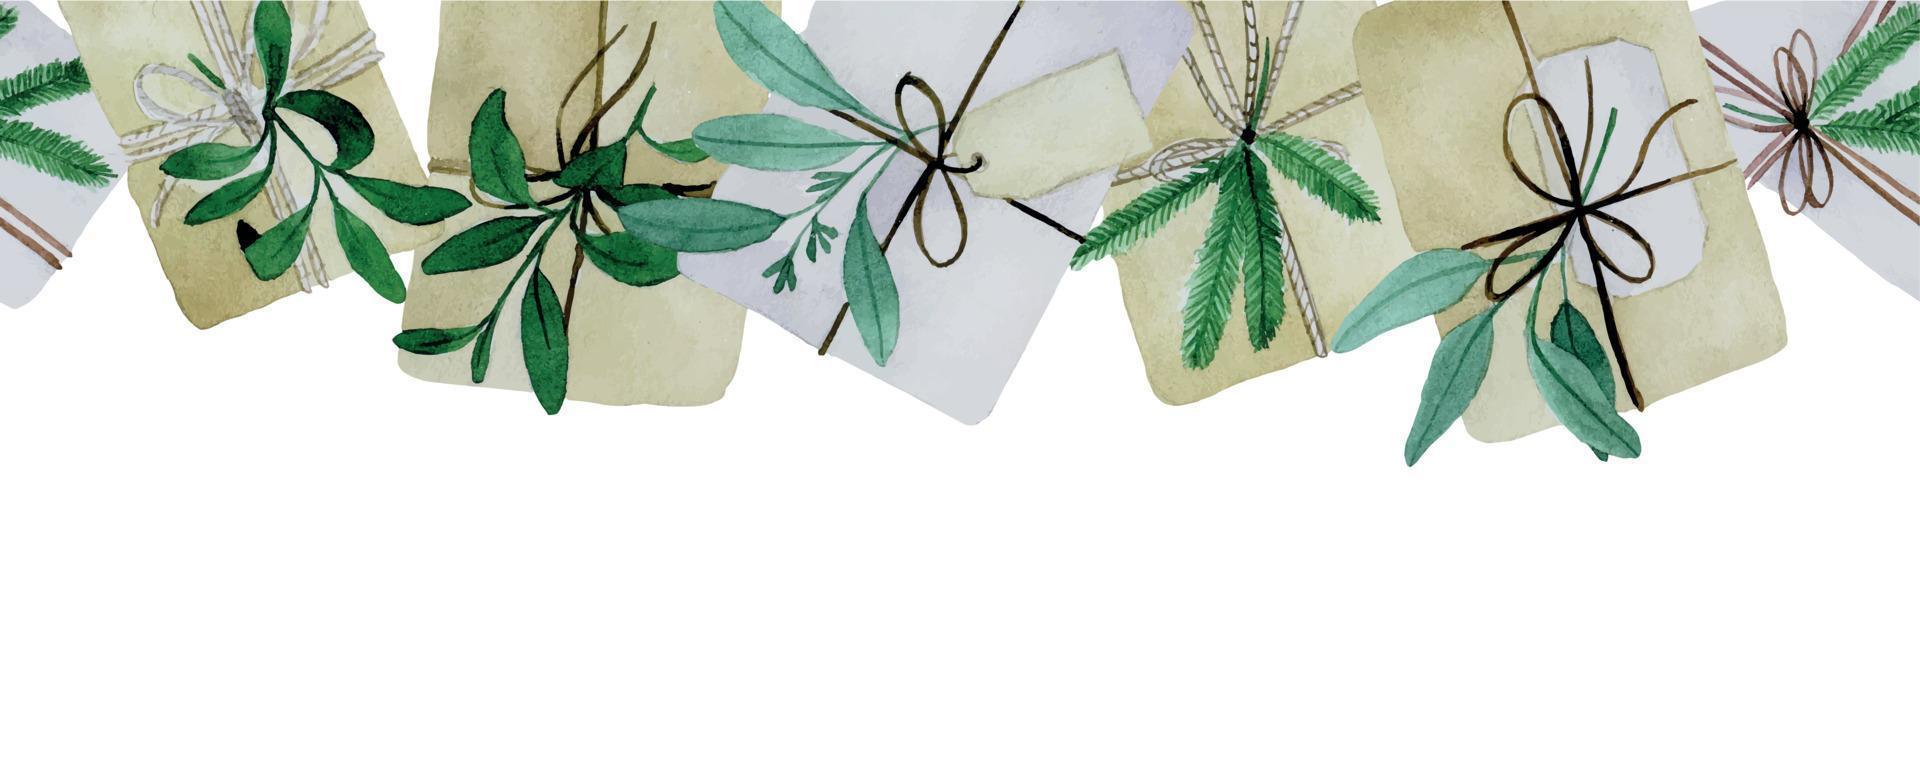 Aquarell nahtlose Grenze mit Weihnachtsgeschenken im Boho-Stil. Geschenkboxen aus Bastelpapier mit Tannenzweigen und Eukalyptusblättern vektor